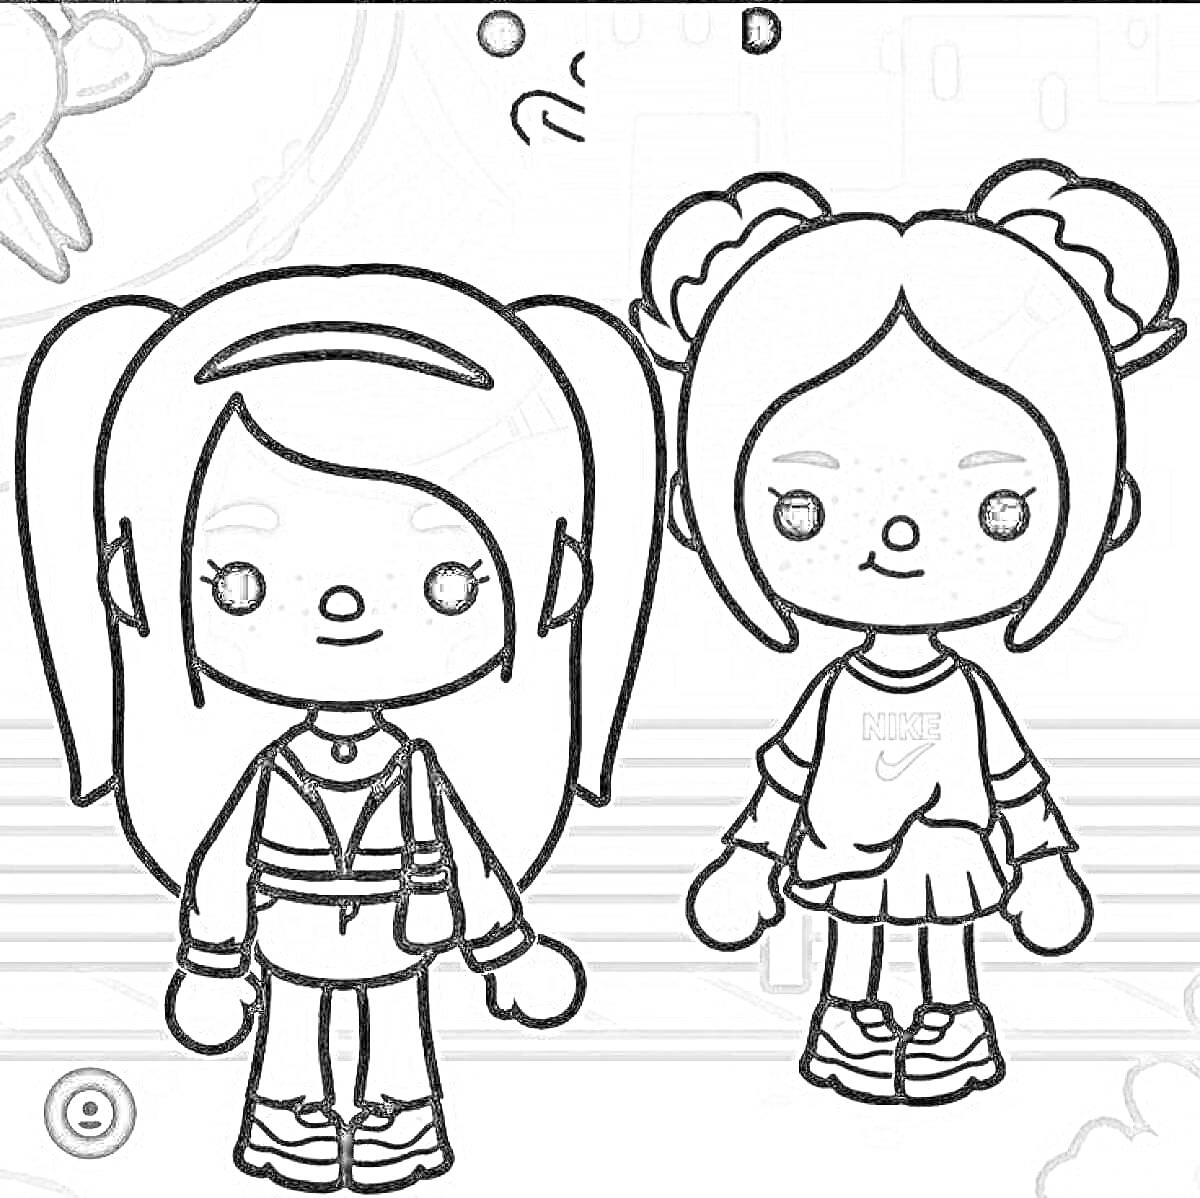 Раскраска Две девочки с разными прическами: одна с длинными распущеными волосами, другая с двумя высокими пучками